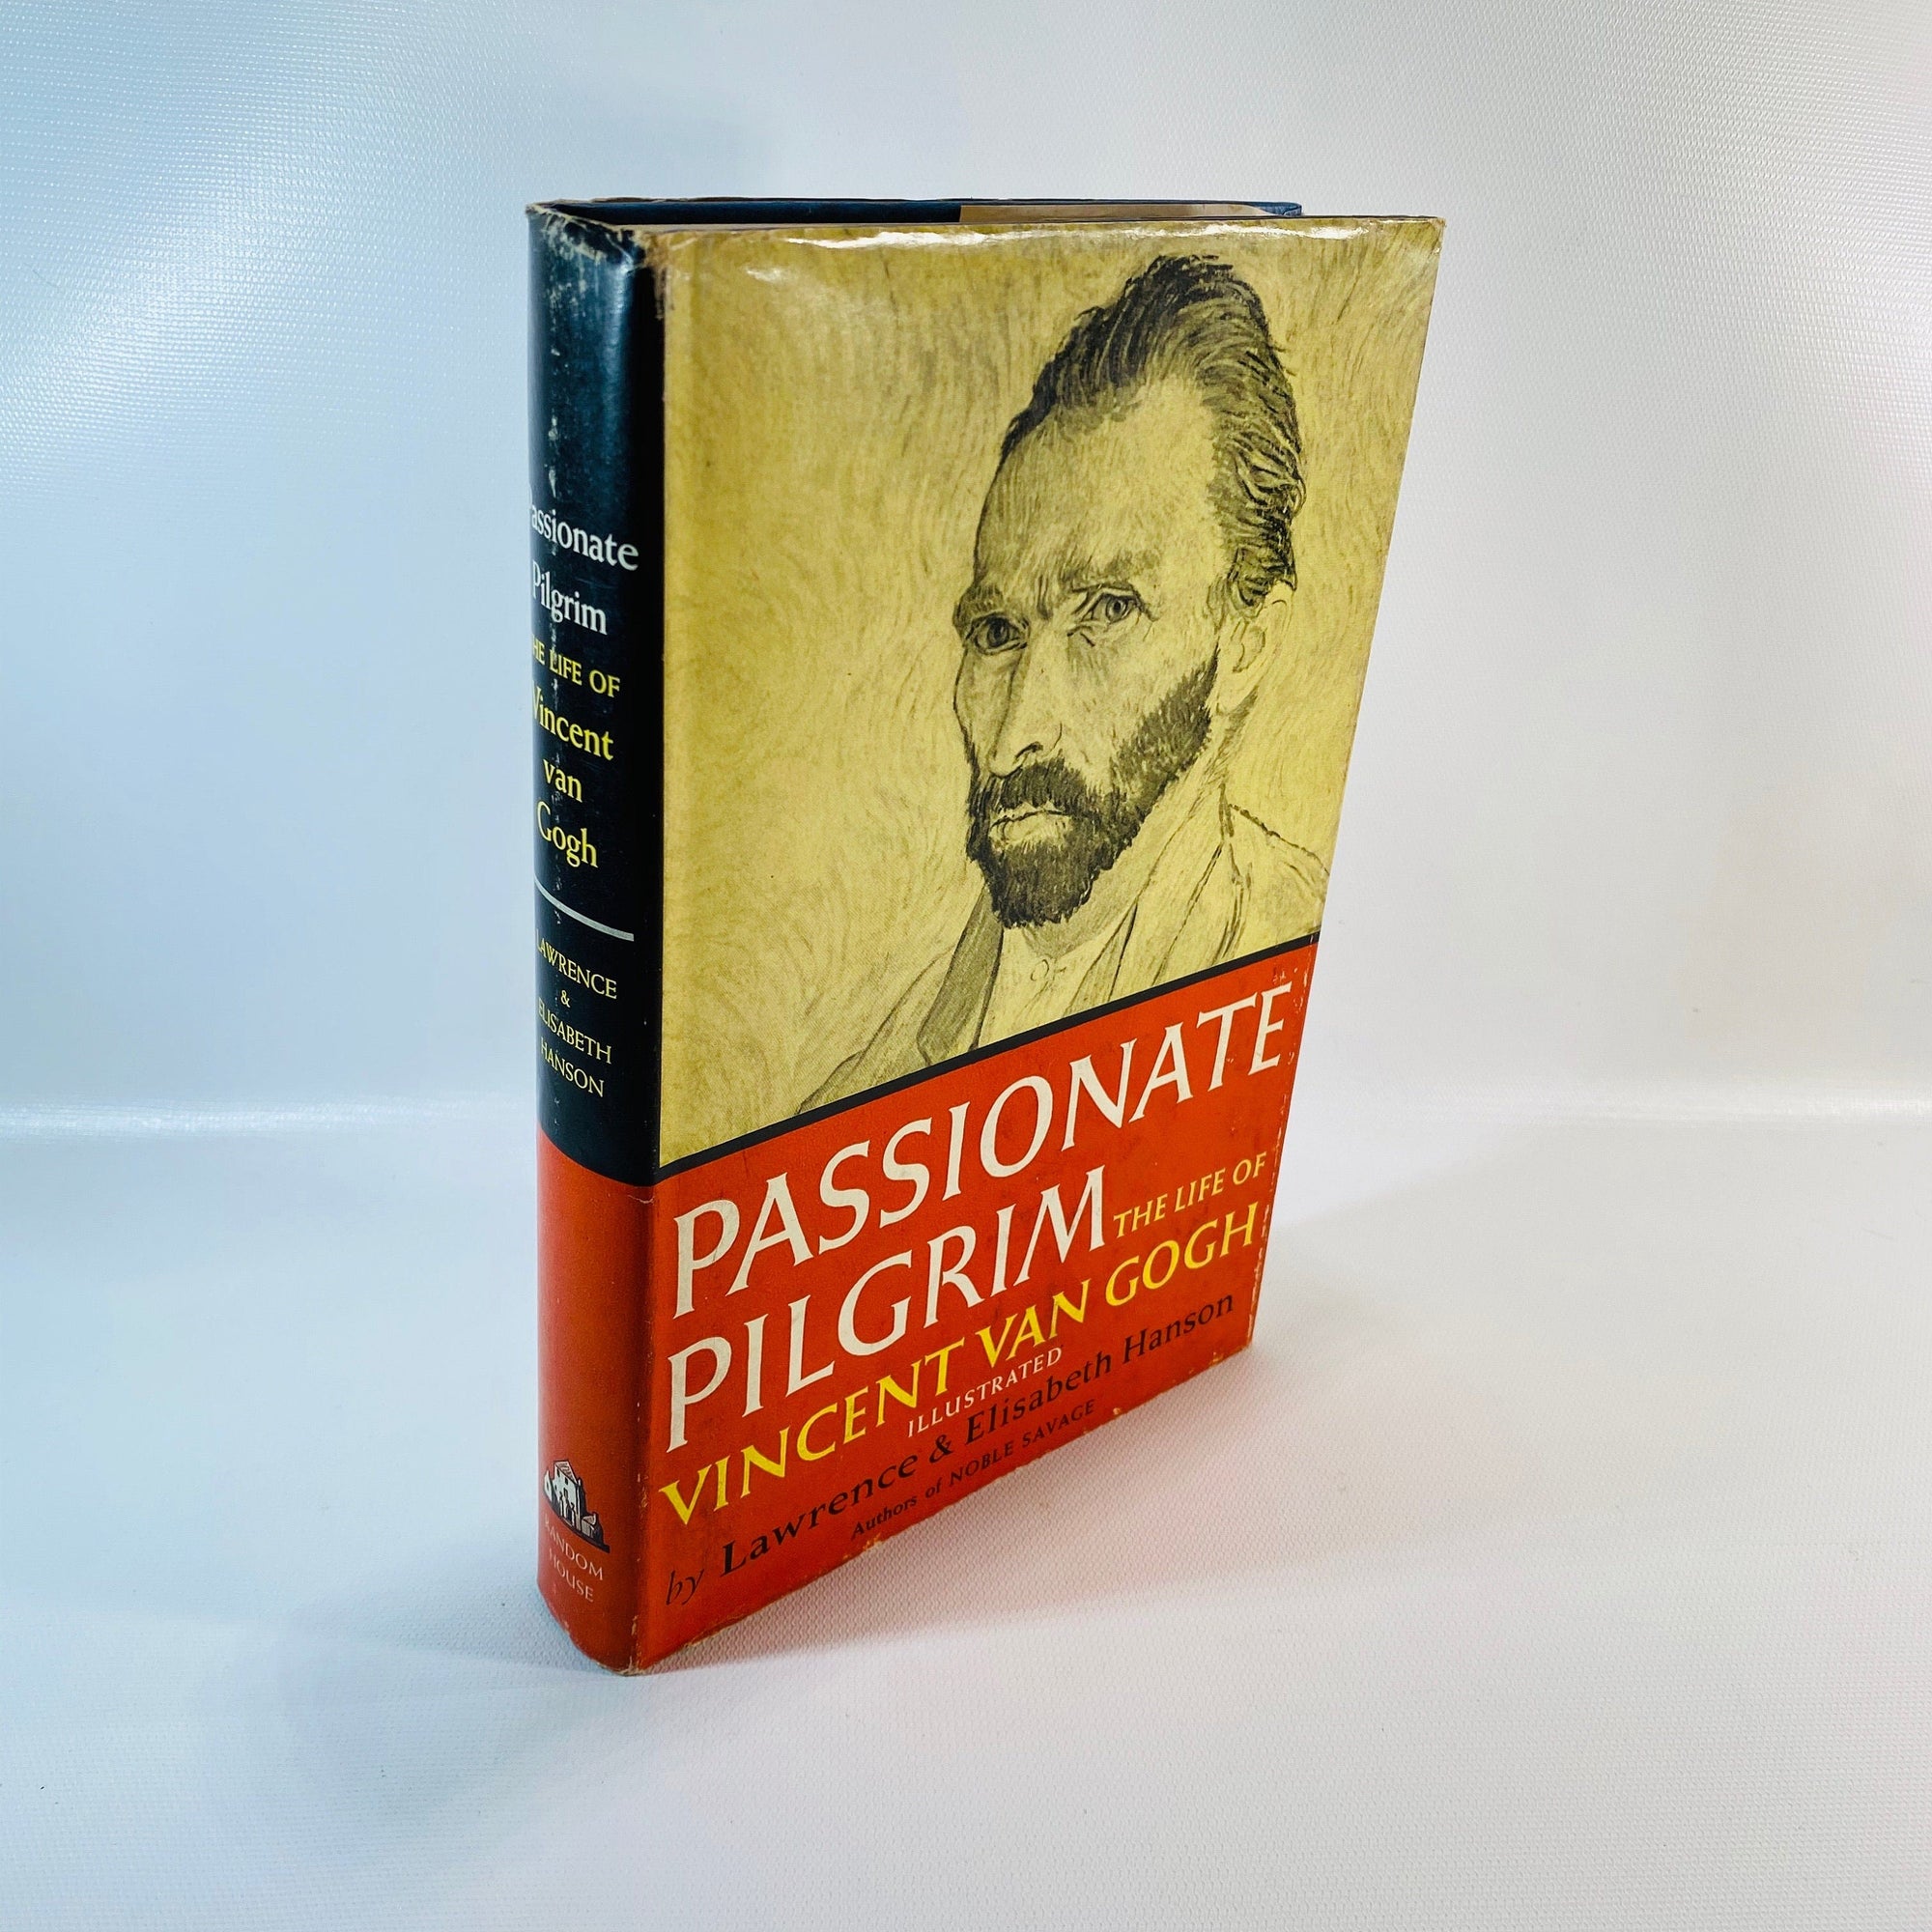 Passionate Pilgrim the Life of Vincent Van Gough by Laurence & Elizabeth Hanson 1955